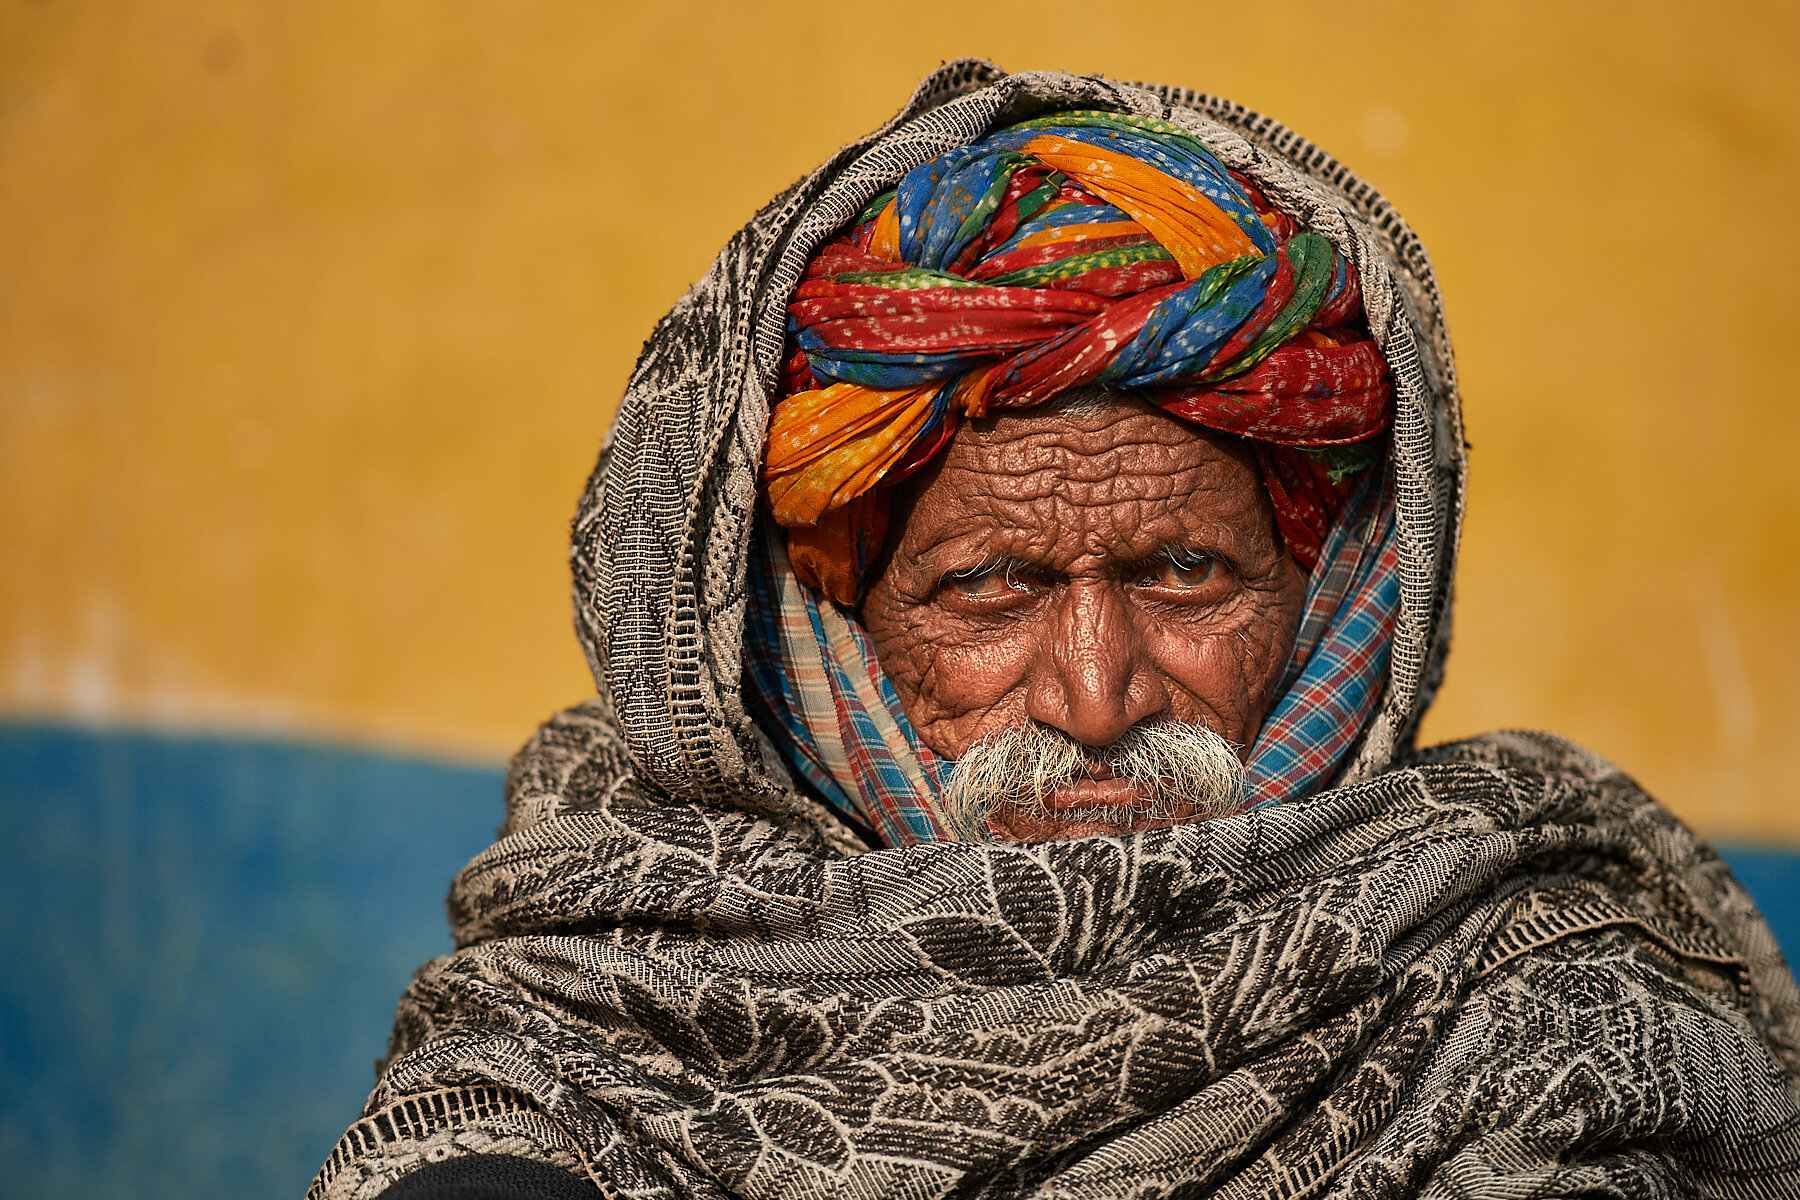 Rabari village elder, Pali, Rajasthan, India